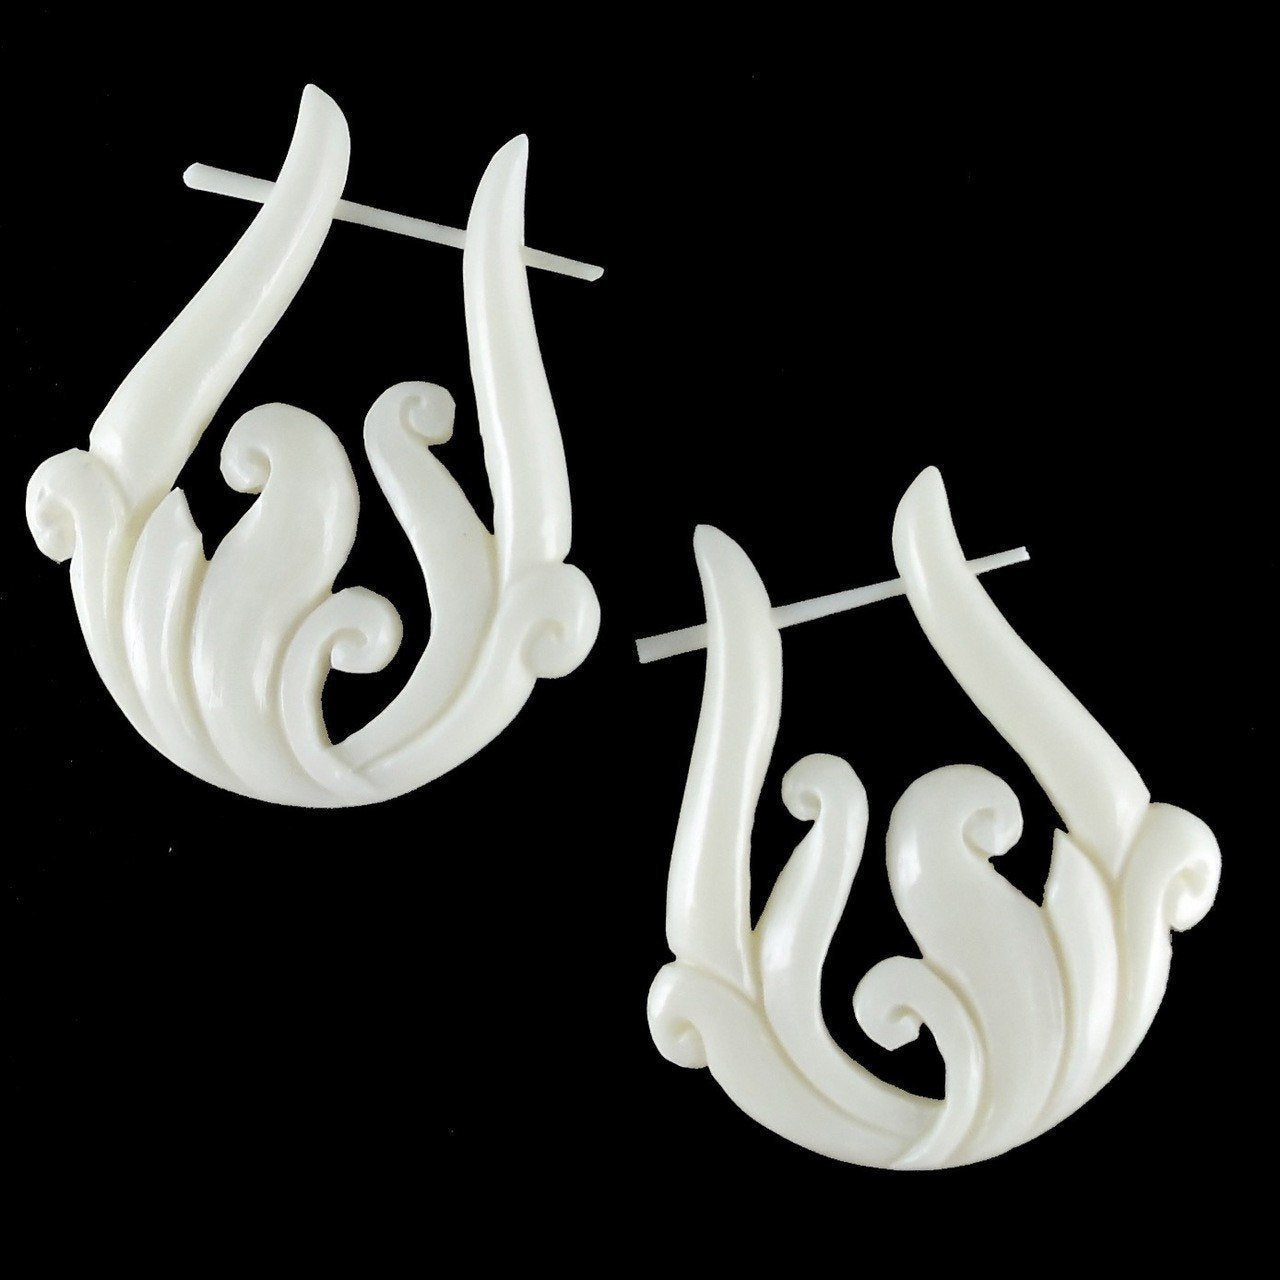 Natural Jewelry :|: Spring Vine. Bone Earrings, 1 1/4 inch W x 1 3/4 inch L. | Tribal Earrings